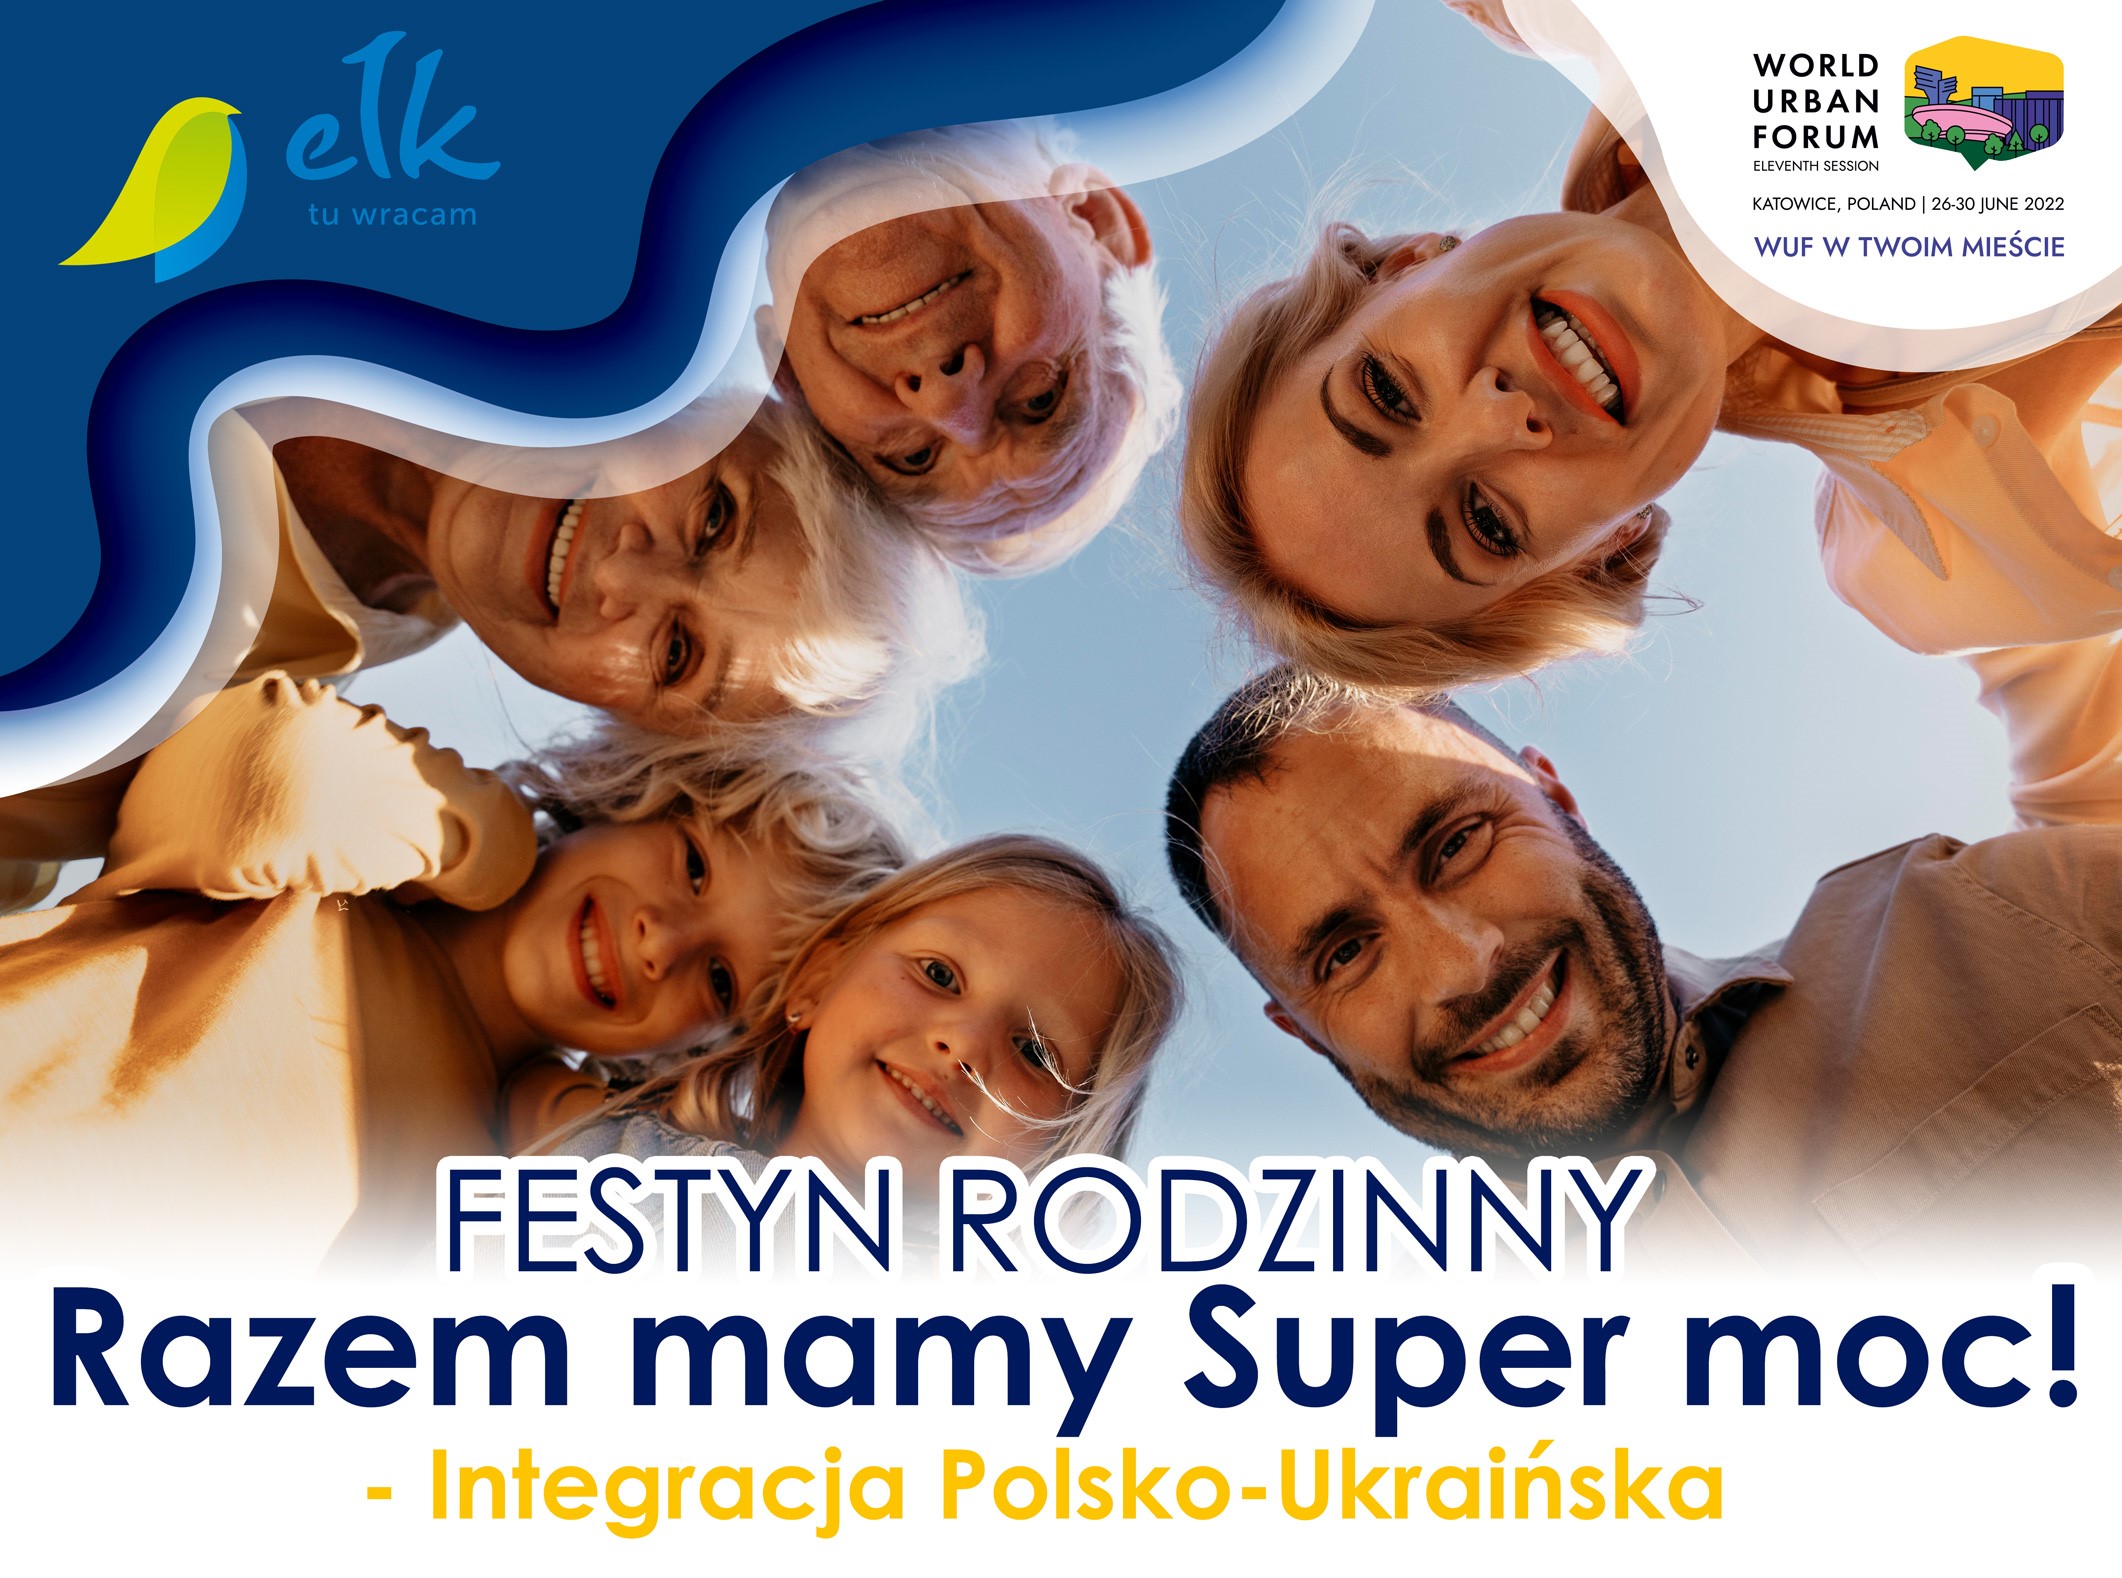 Семейный фестиваль польско-украинской интеграции